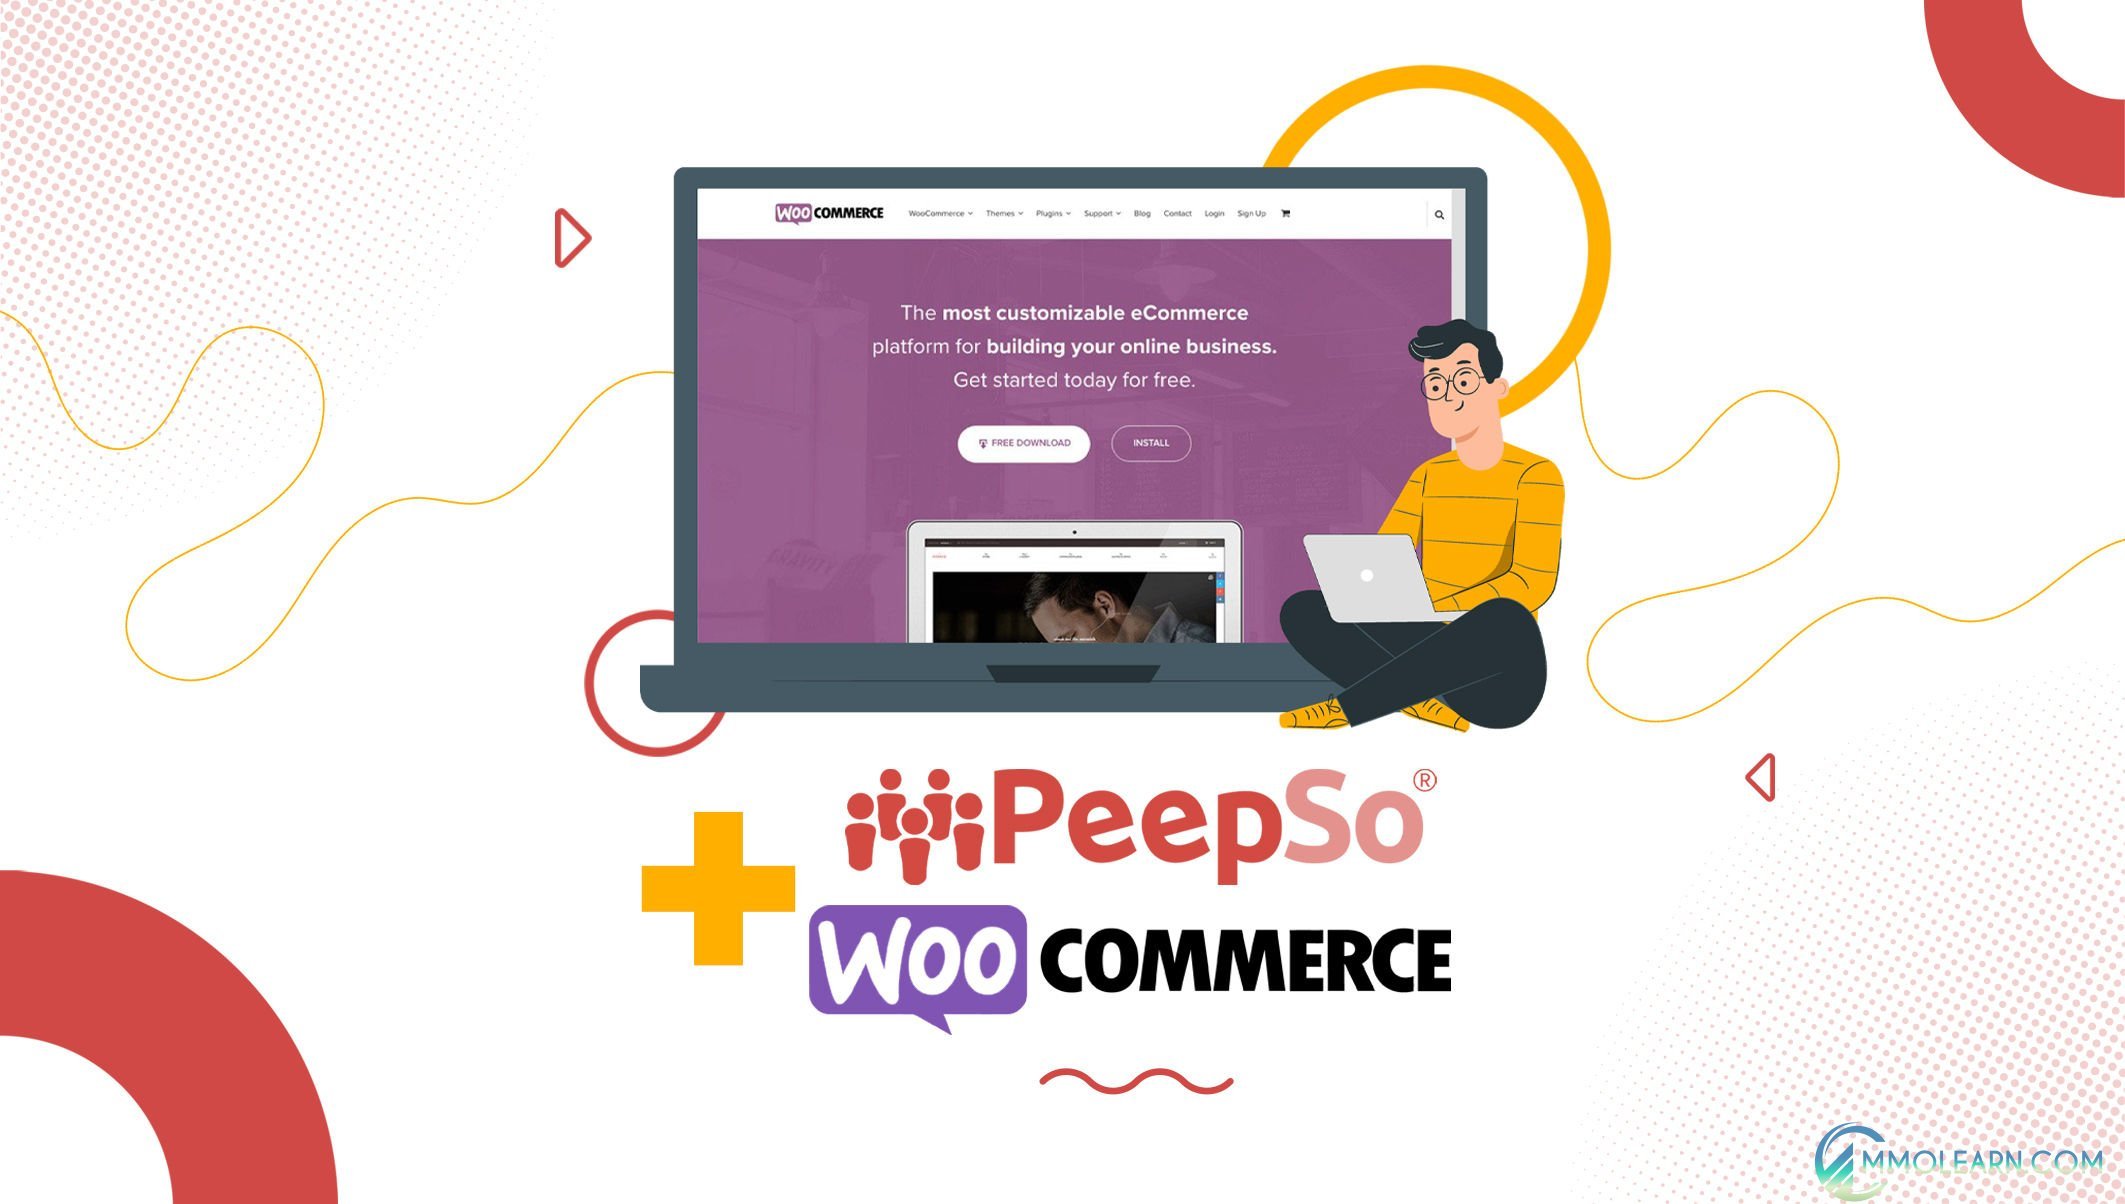 PeepSo - WooCommerce Integration.jpg